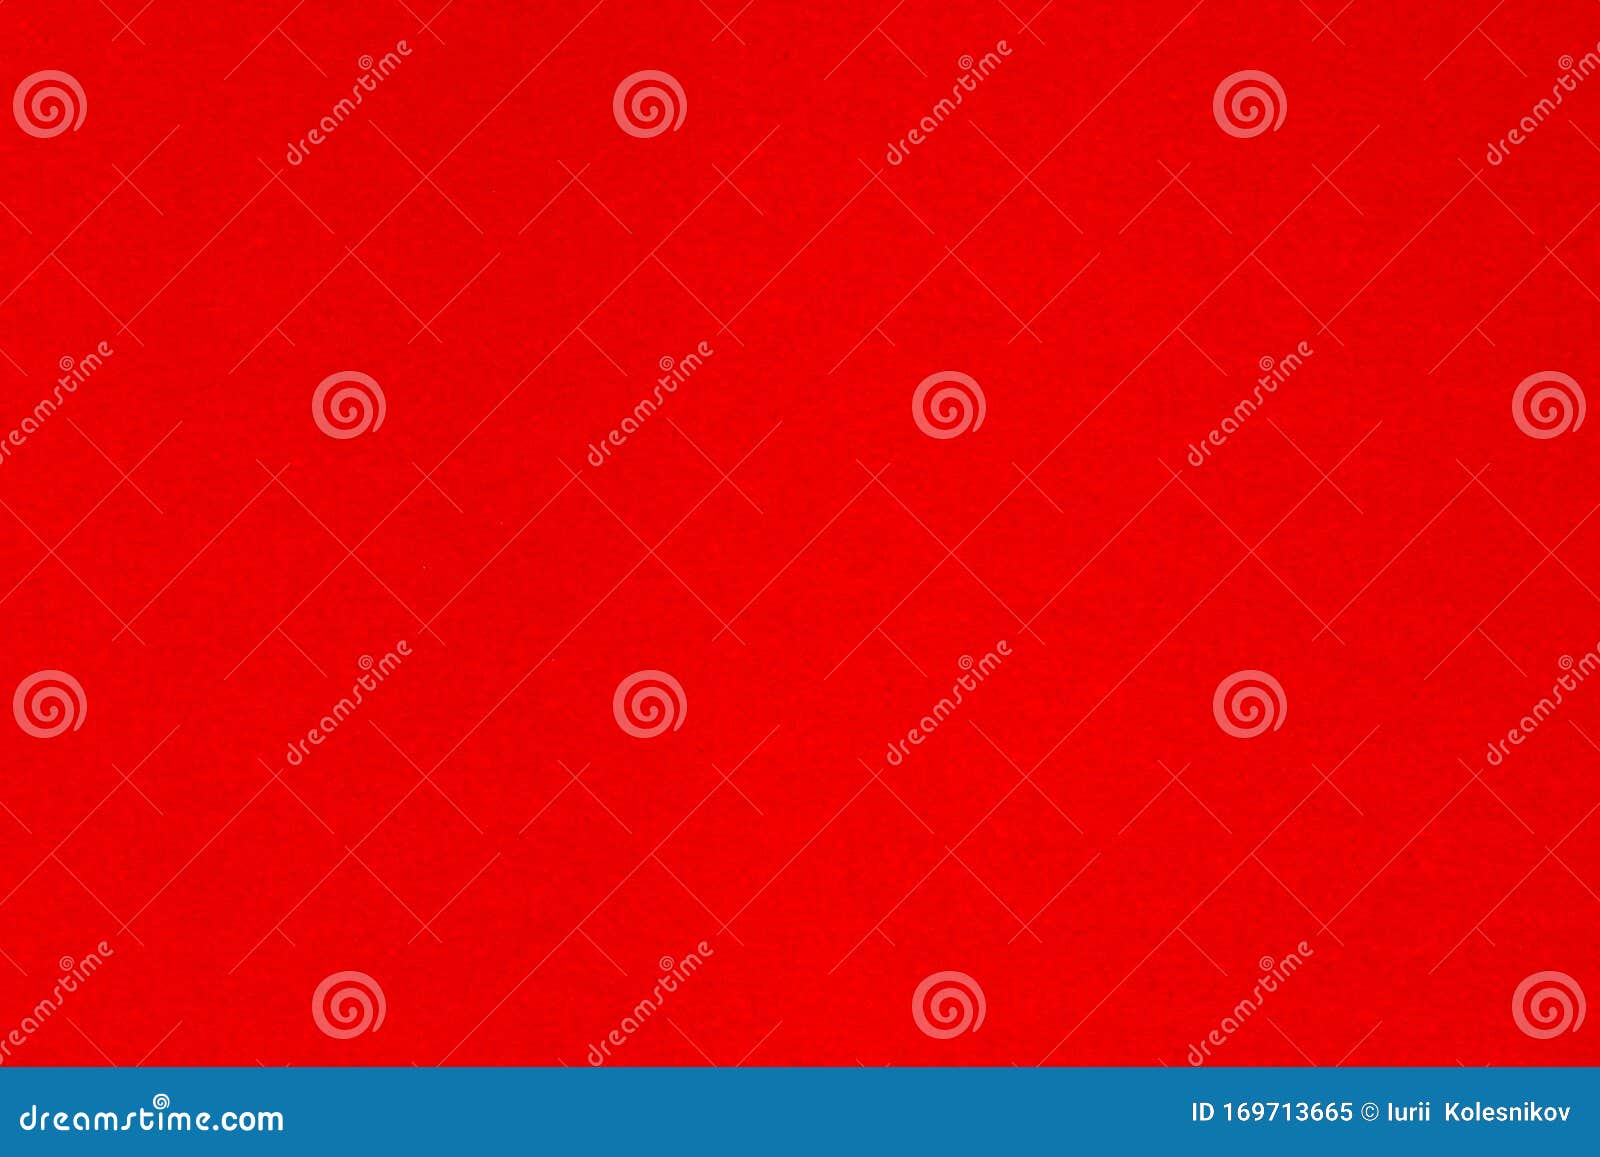 Rood Vet Stock Afbeelding - Image of karton, vakantie: 169713665